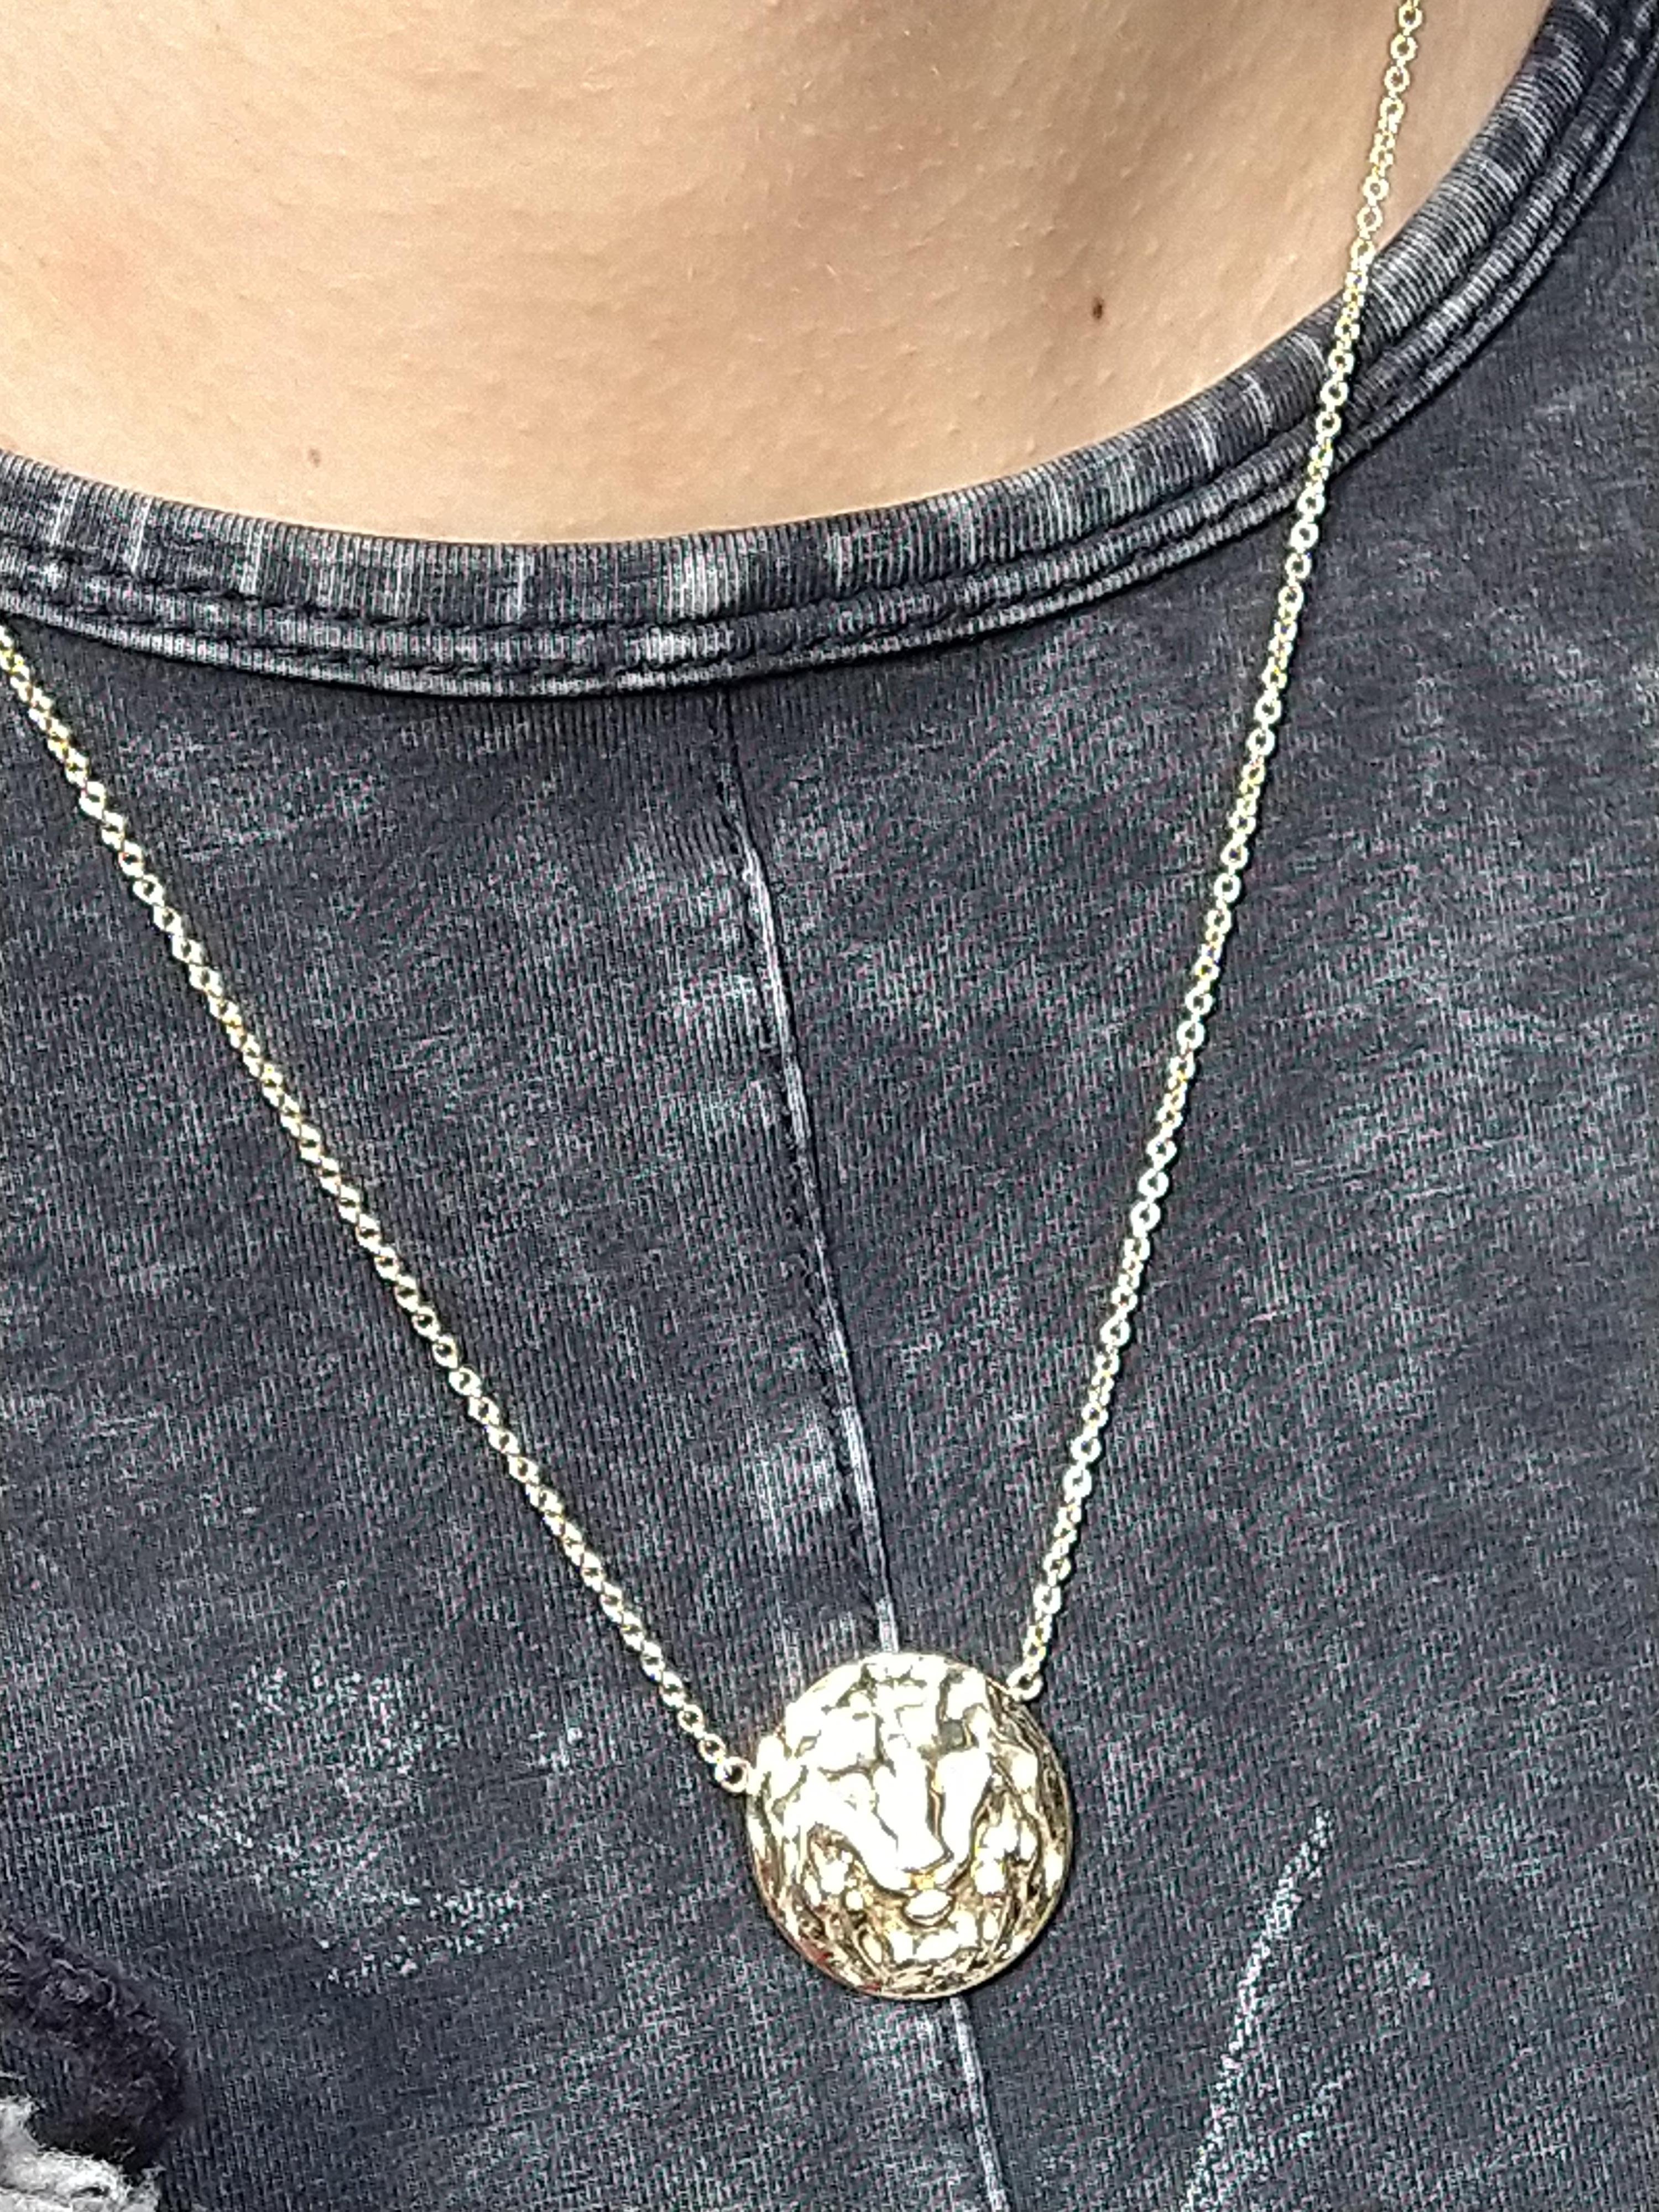 lion necklace women's